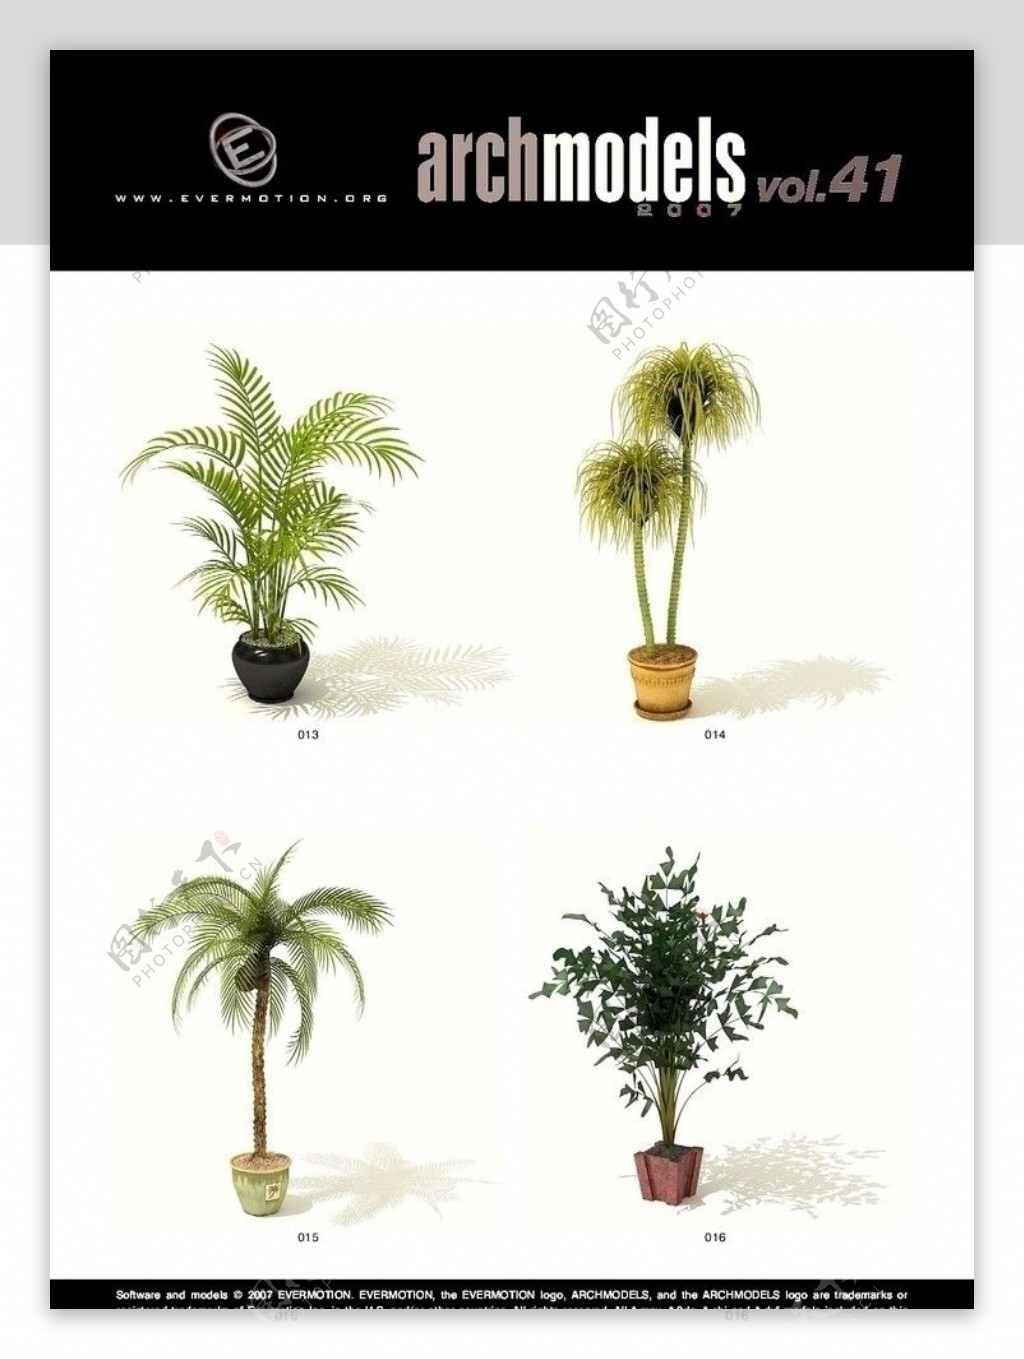 三维植物模型素材图片